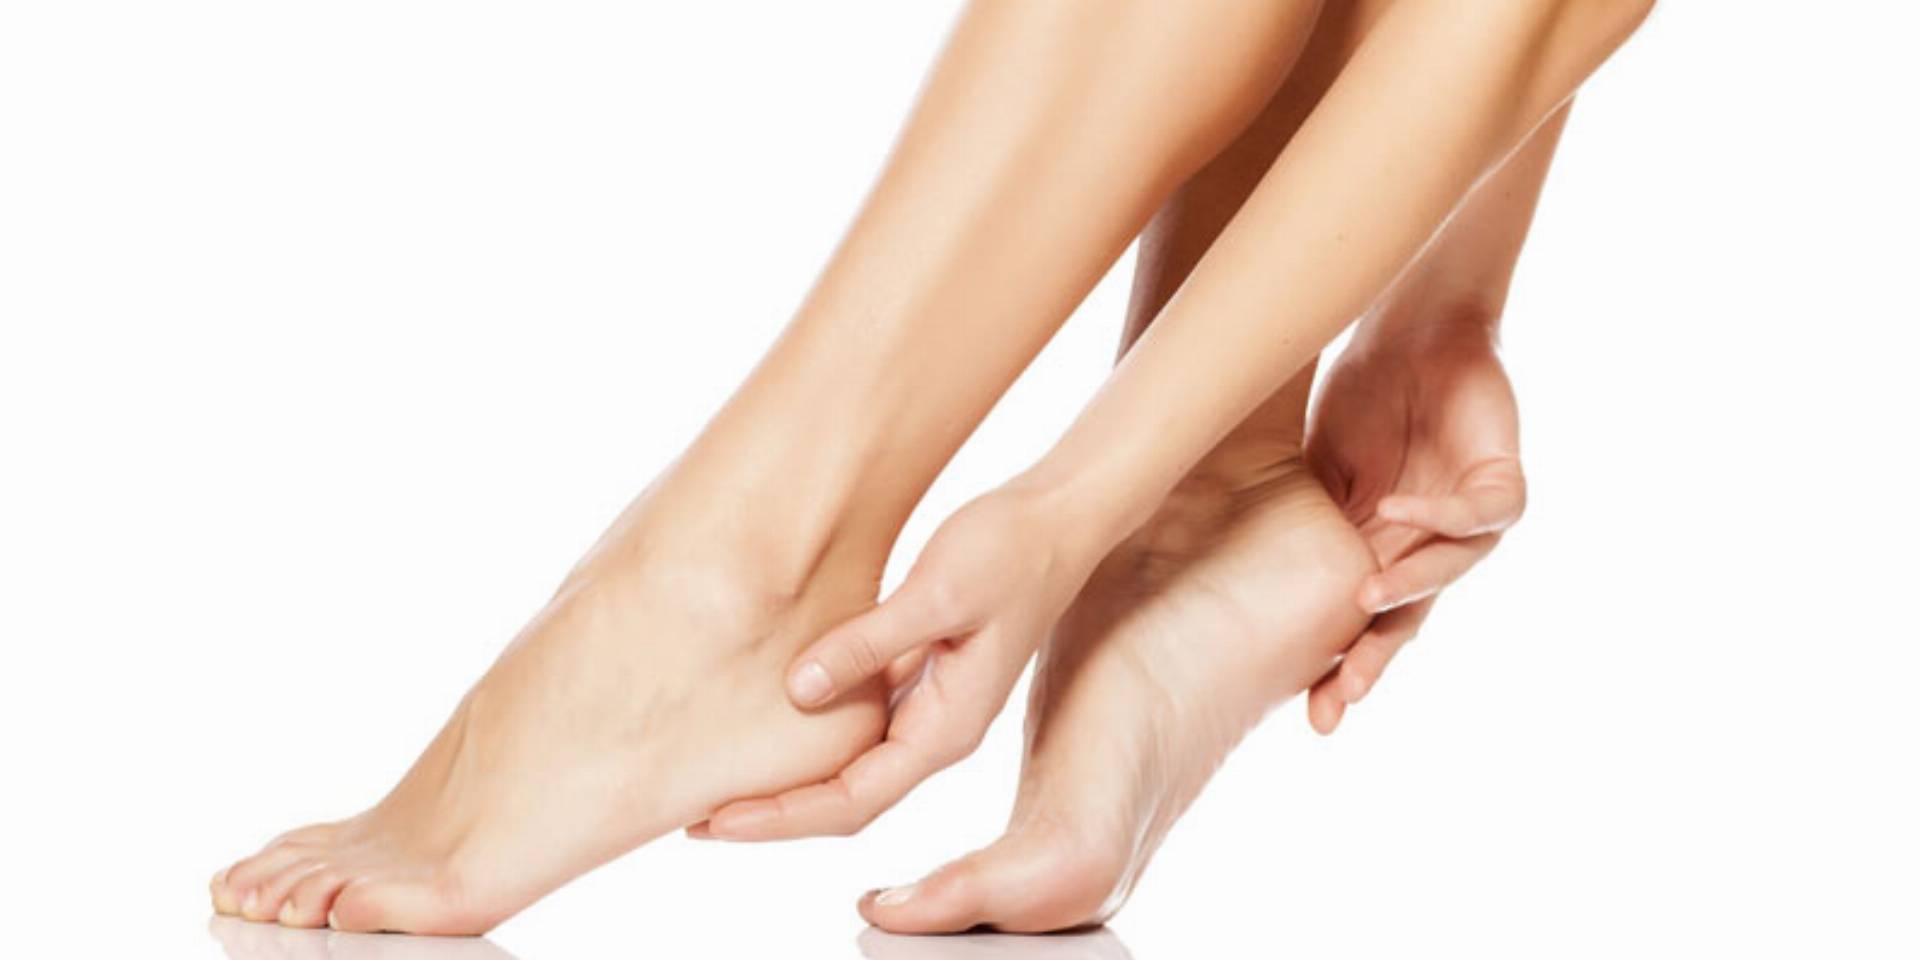 ekspert podolog podpowiada jak zadbac o paznokcie u nog i stopy po zimie kobietamag pl stylizacja paznokci wiosna 2021 naklejki na wodne